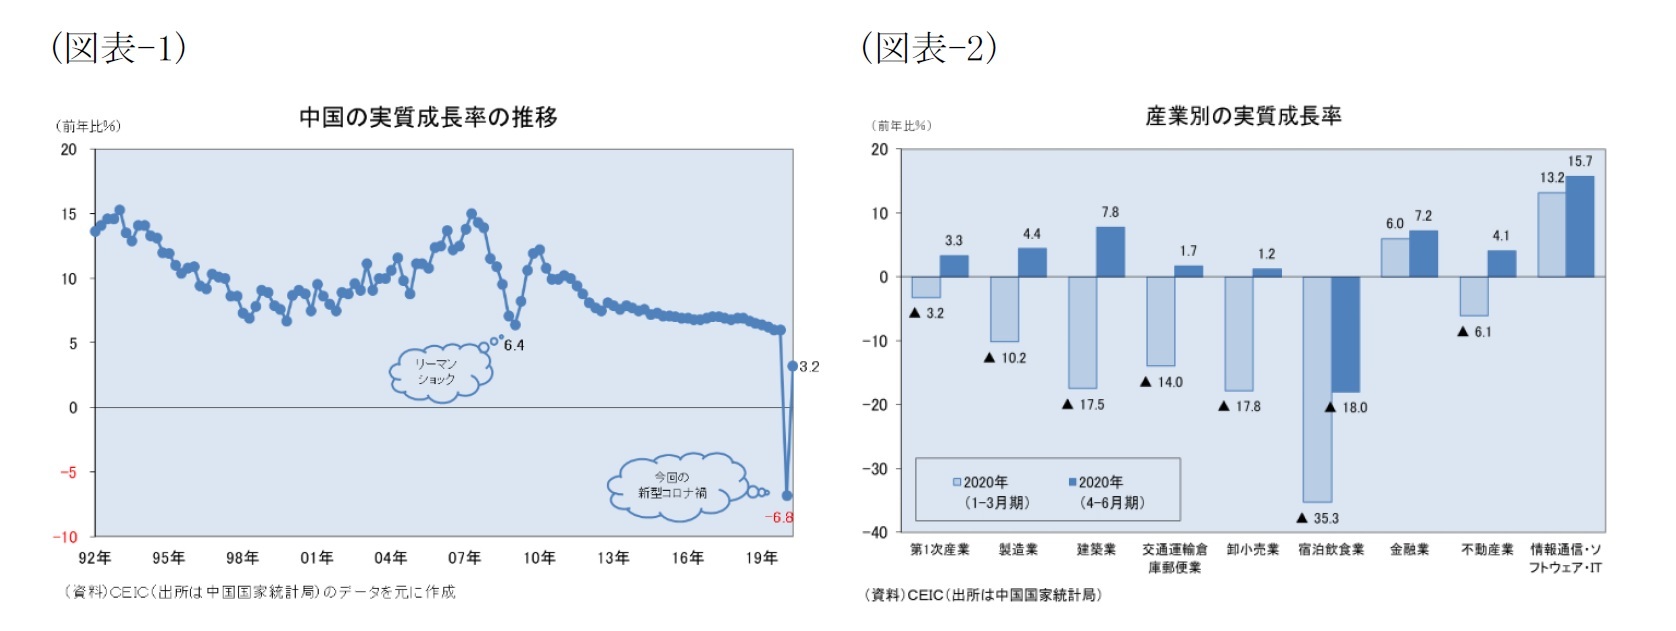 （図表-1）中国の実質成長率の推移/（図表-2）産業別の実質成長率